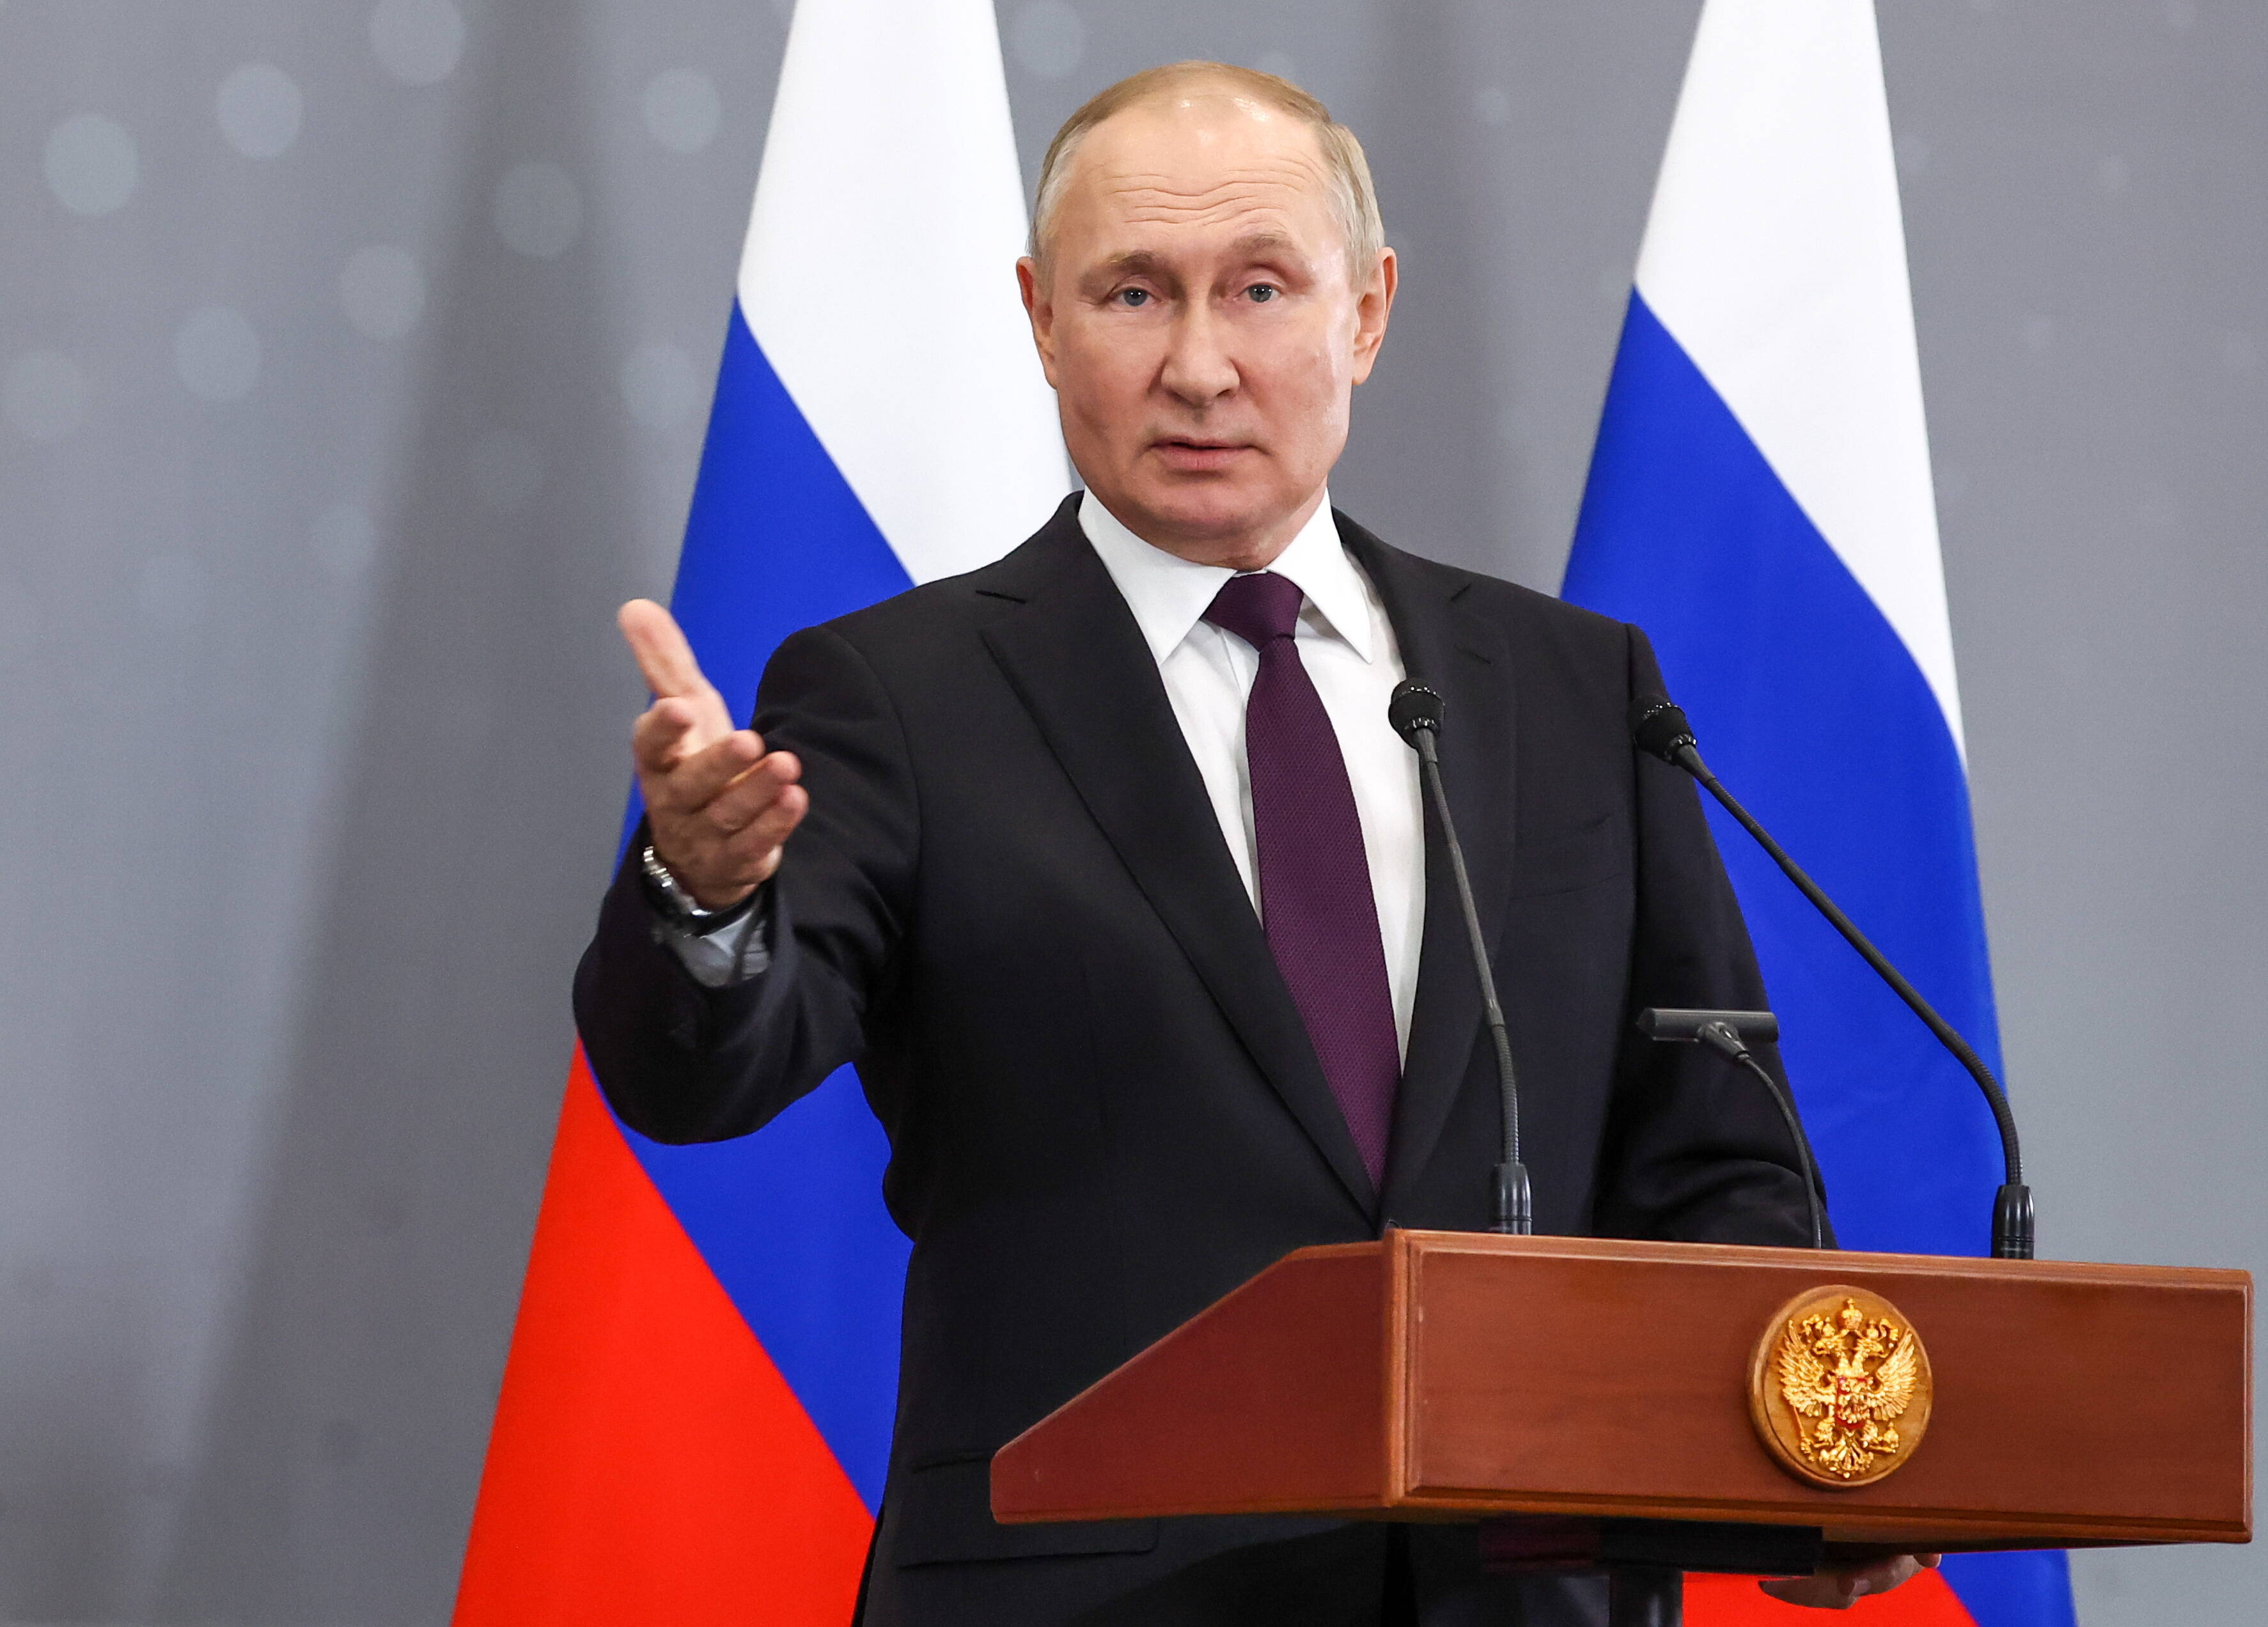 Kapituliert Putin jetzt? Kreml-Elite will aufgeben - Hohe russische Beamte wollen Friedensgespräche!